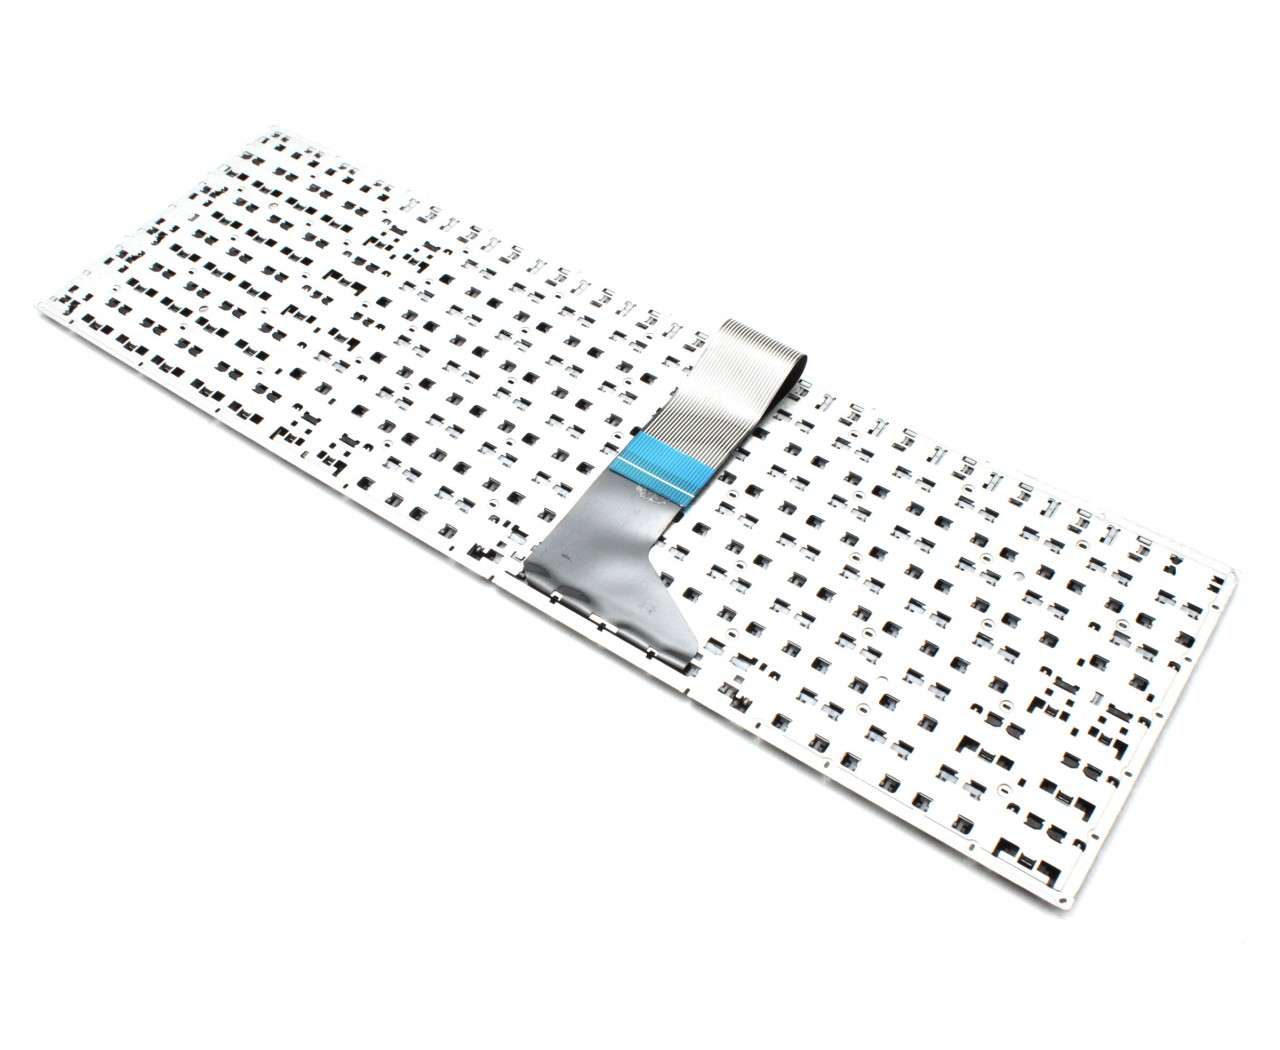 Tastatura Neagra cu Taste Rosii Asus F550JX layout US fara rama enter mic